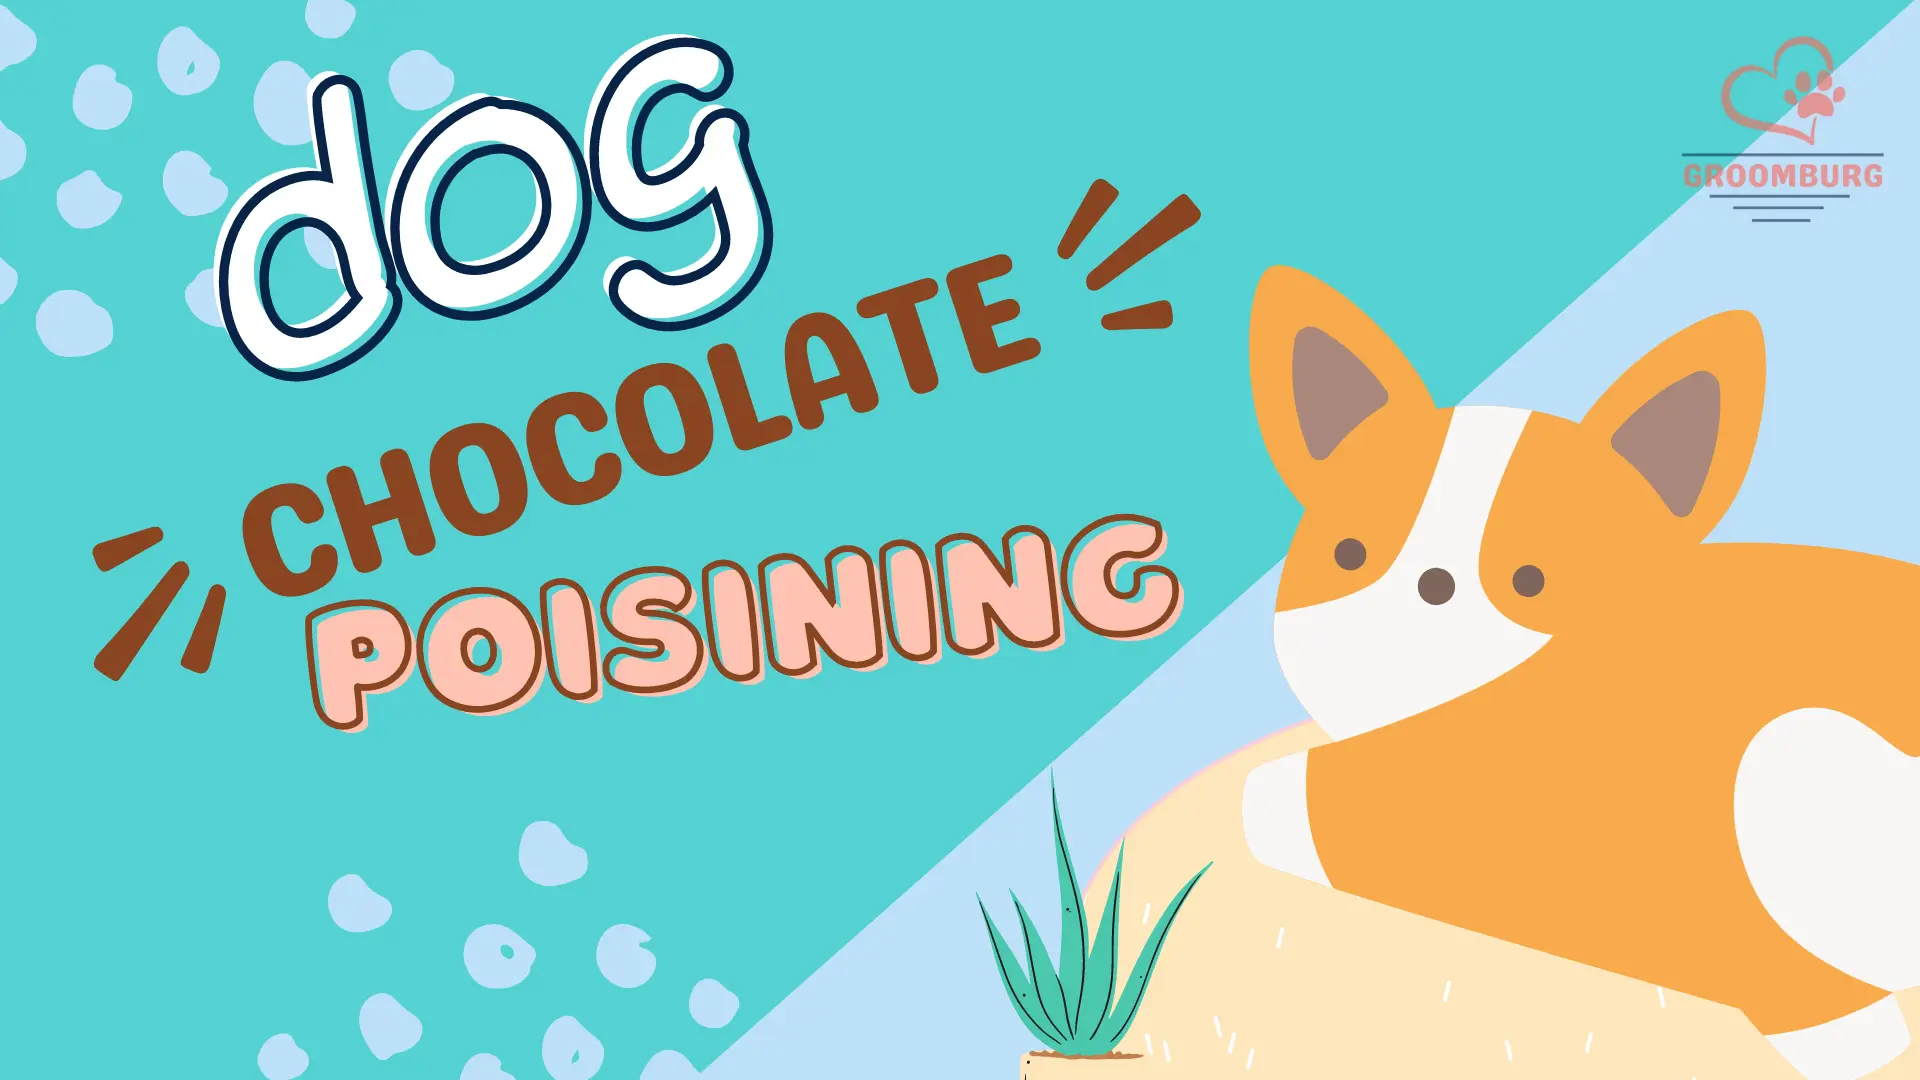 dog chocolate poisining